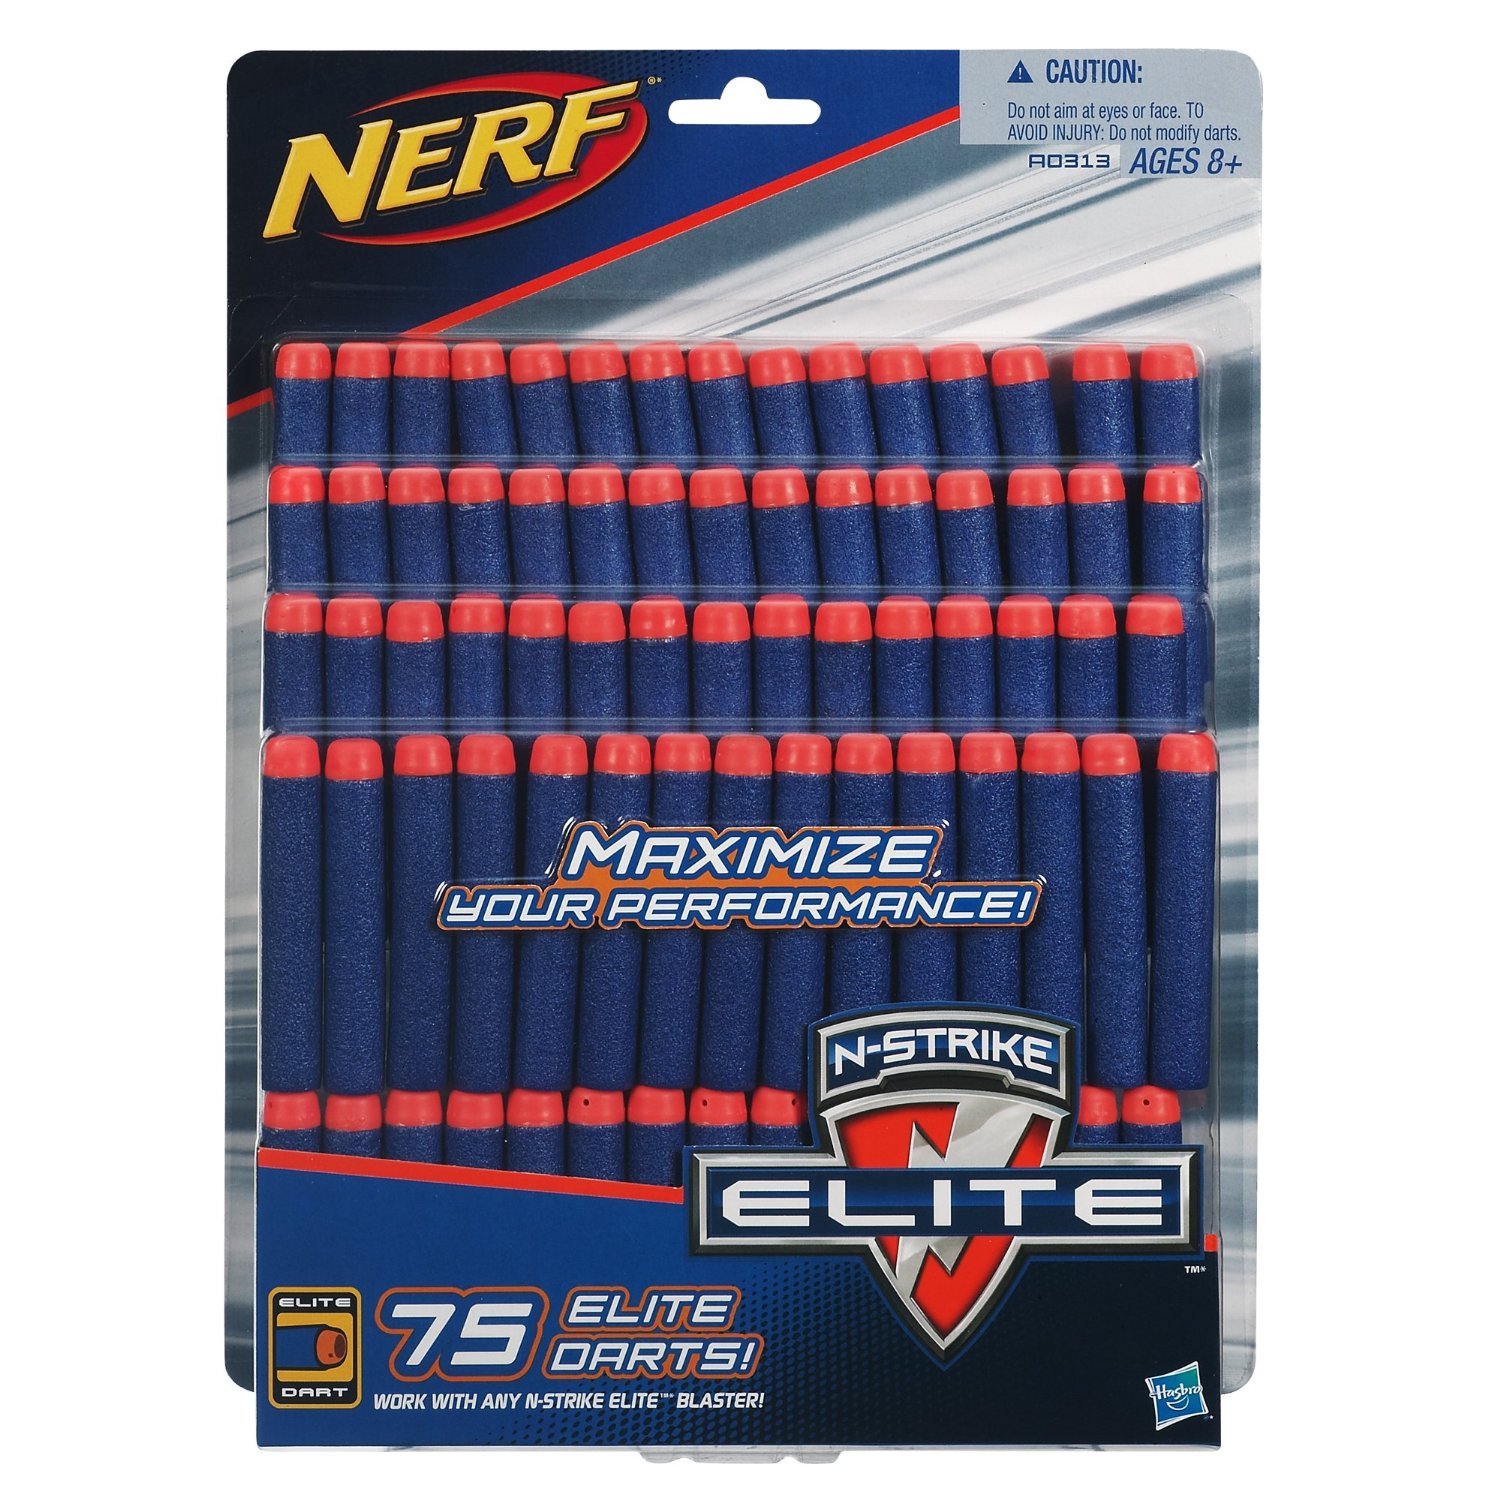 Prime Members: Nerf N-Strike Elite Dart Refill Pack – 75 Darts – $7.67!